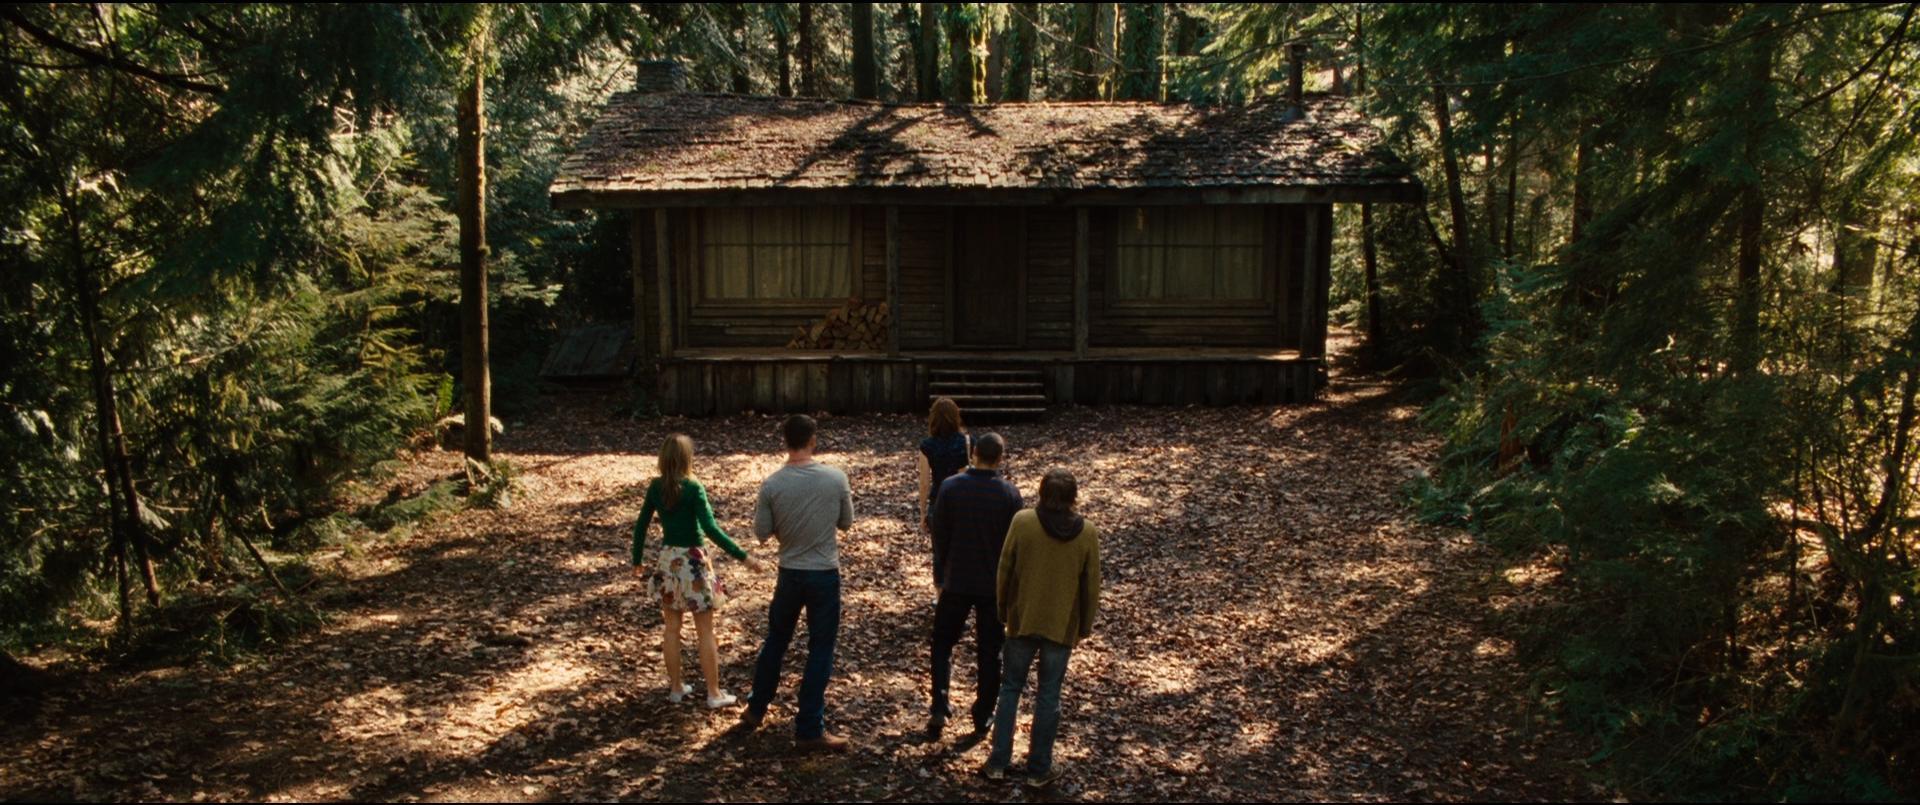 La cabaña en el bosque (2011) - Filmaffinity